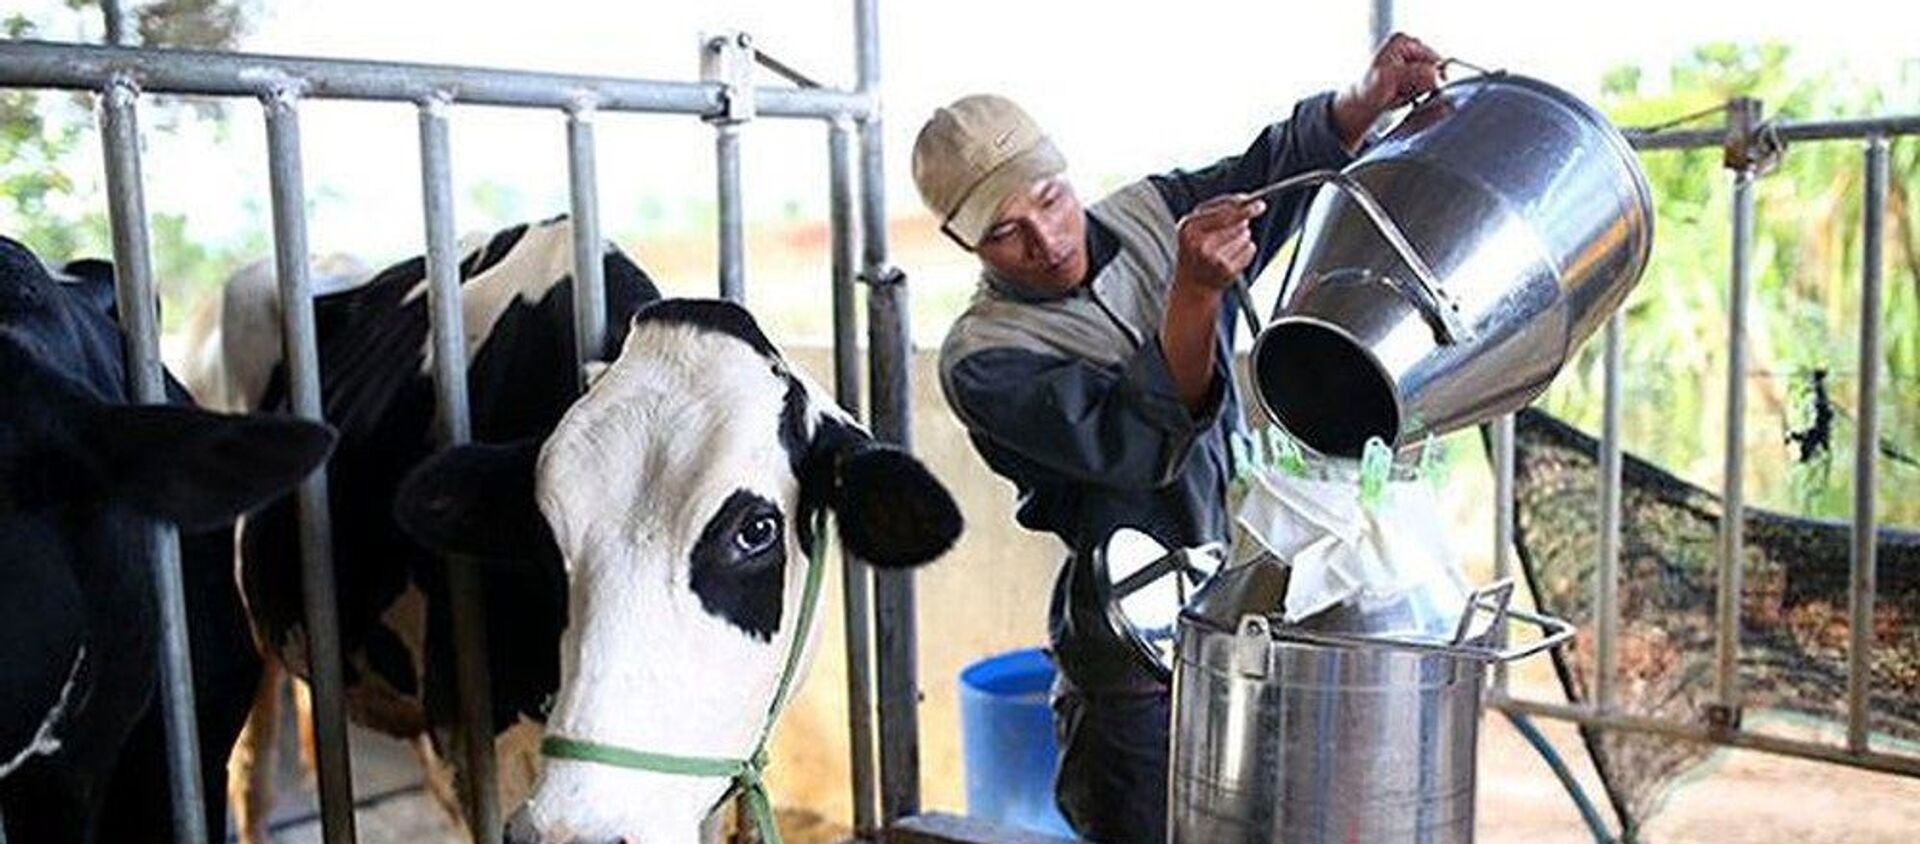 Việt Nam đặt mục tiêu năm 2020, xuất khẩu sữa sang Trung Quốc sẽ tăng từ 120 triệu USD lên 300 triệu USD. - Sputnik Việt Nam, 1920, 21.10.2019